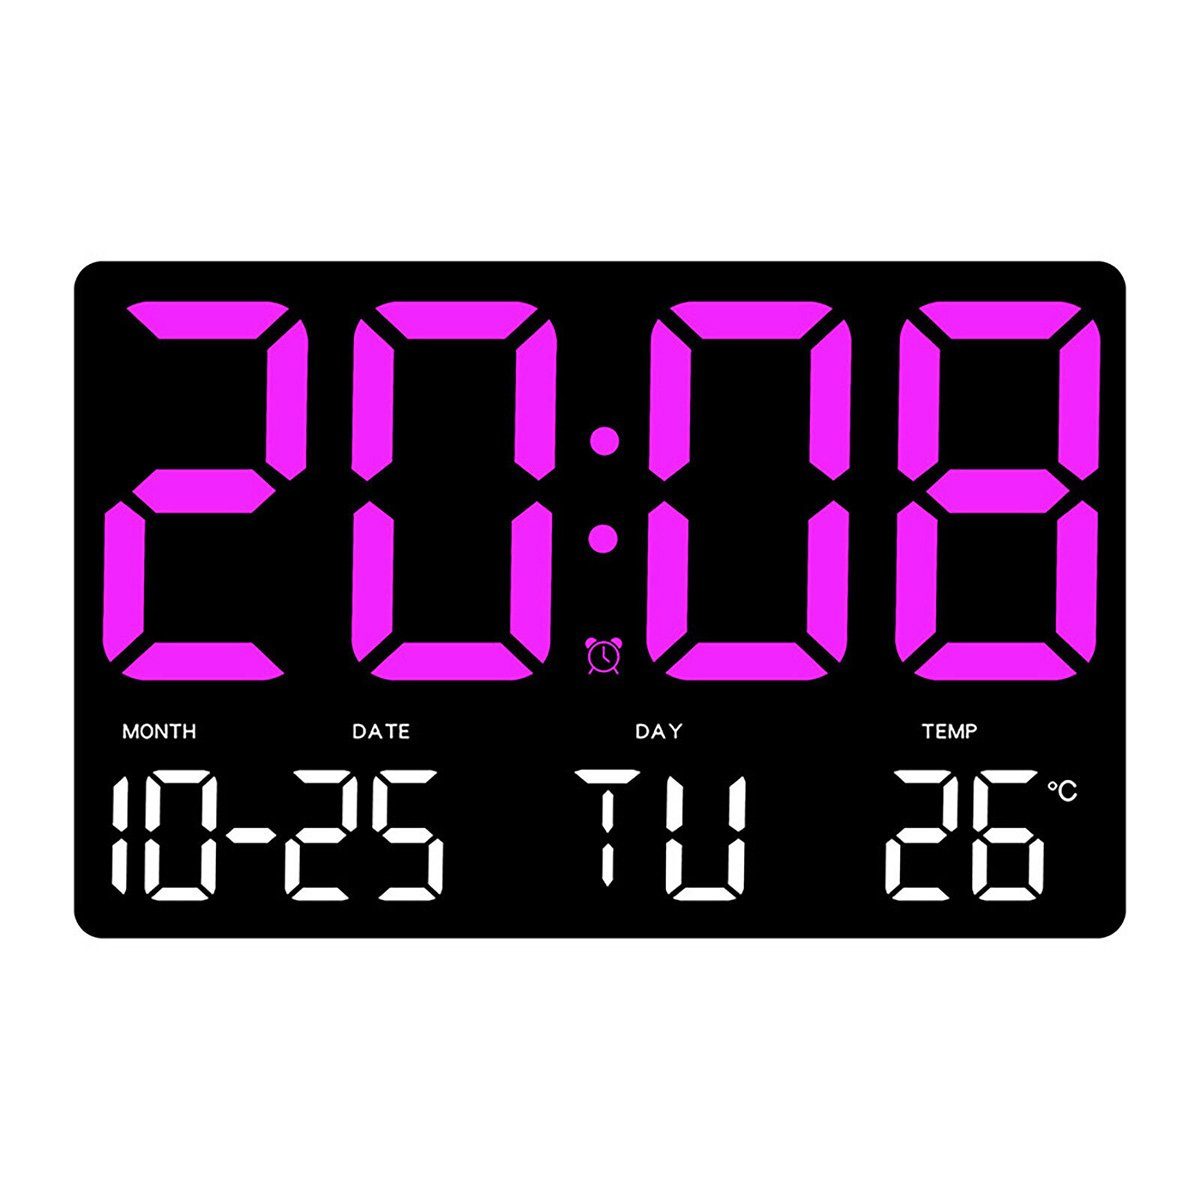 yozhiqu Uhr Digitale LED-Wanduhr,Hänge- und Standuhr, Multifunktionswecker (Kann Temperatur, Datum, Wochentag, Heimdekoration anzeigen)